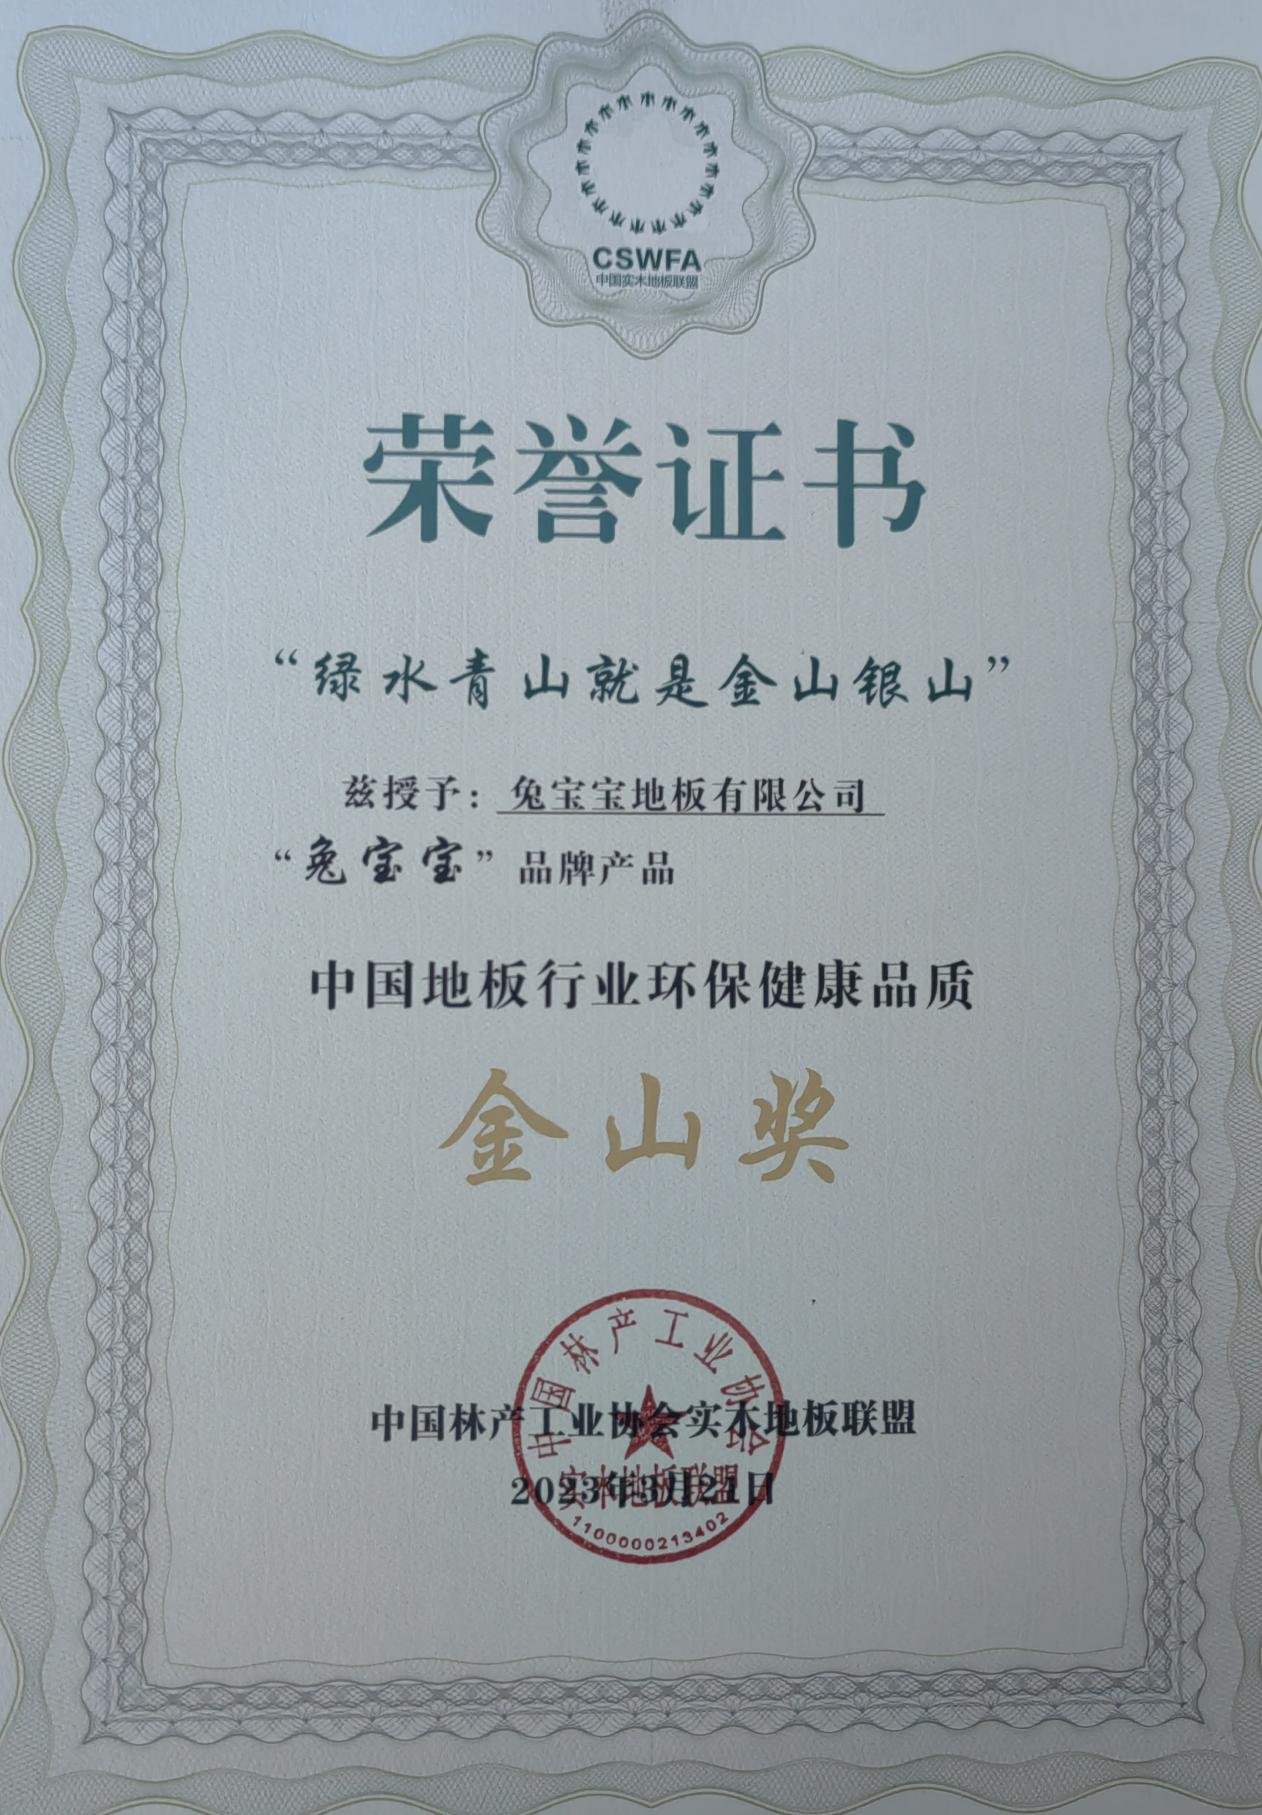 荣耀时刻——兔宝宝地板获“中国地板行业环保健康品质金山奖”